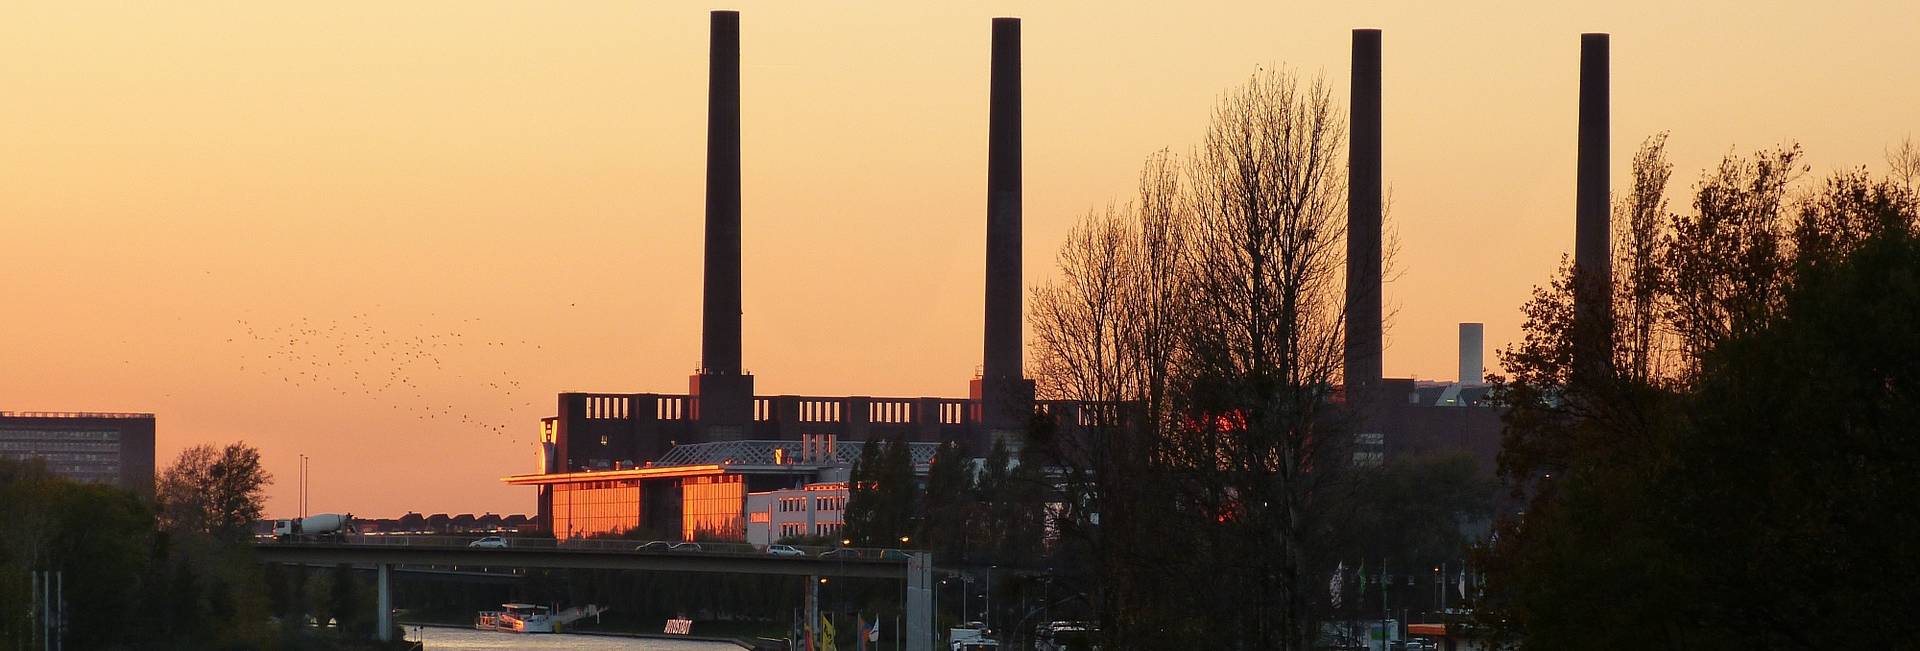 Autovermietung Harms in Wolfsburg